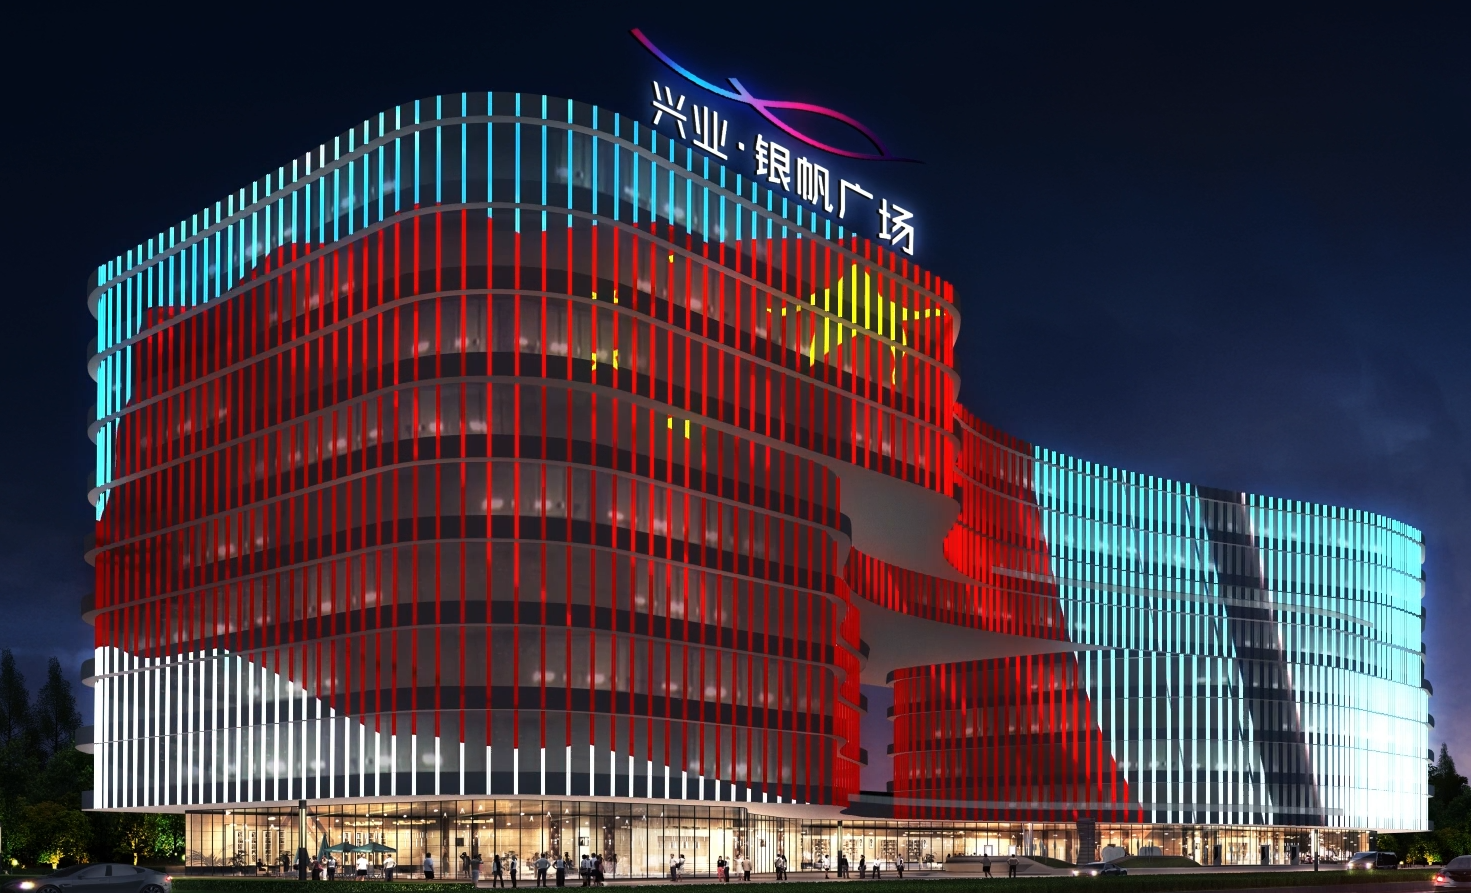 聚焦阿拉尔市阿拉尔大道，新疆阿拉尔金融中心建设项目（A 地块）泛光照明工程震撼开启！